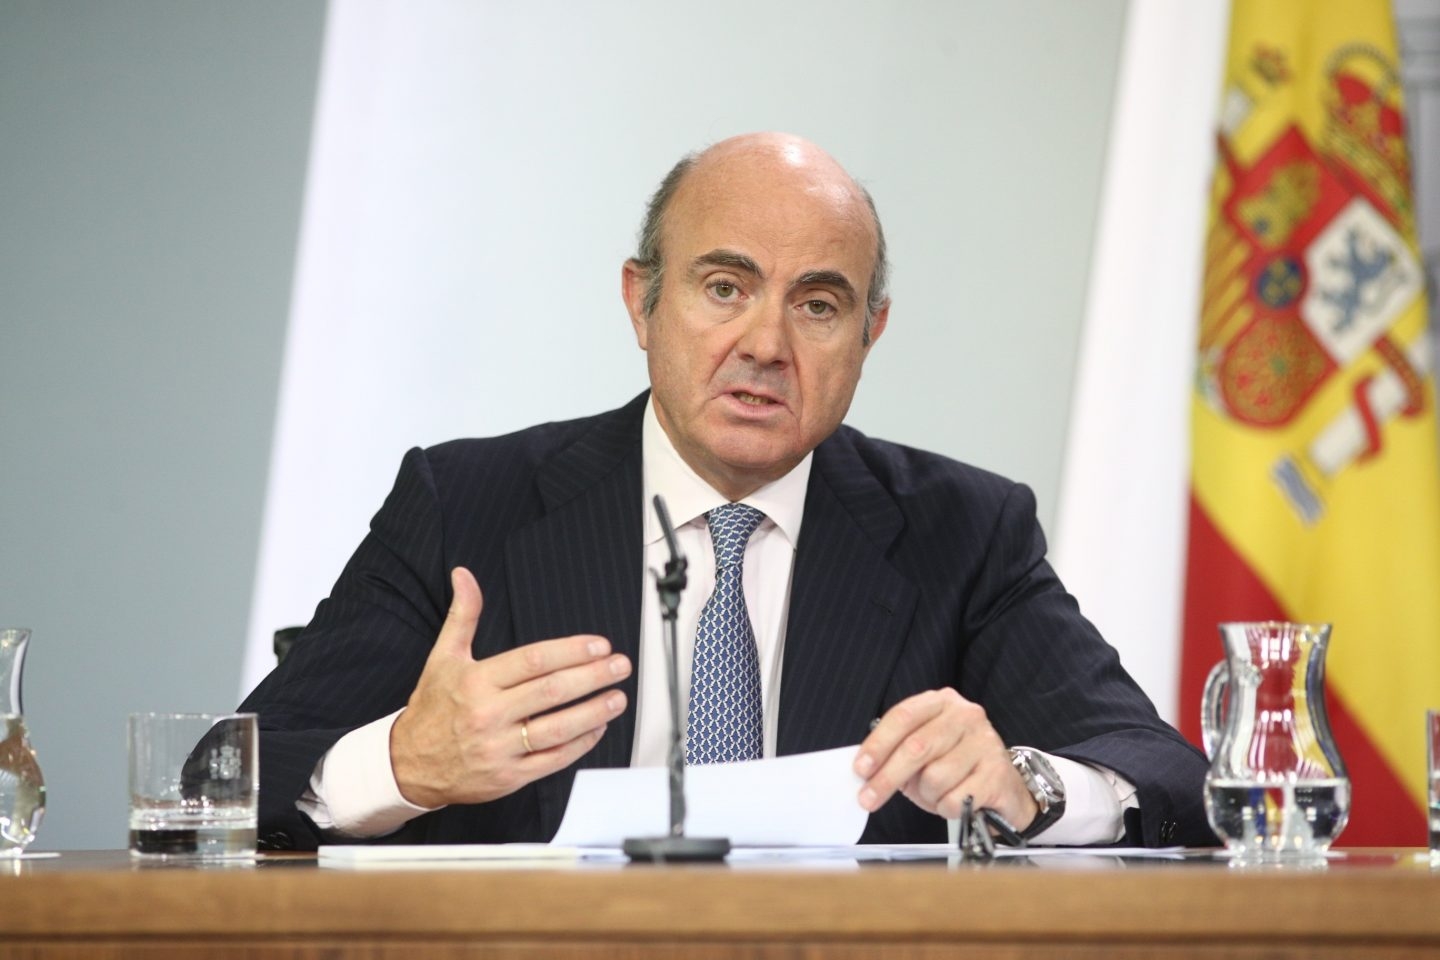 Luis de Guindos, ministro de Economía, Industria y Competitividad.